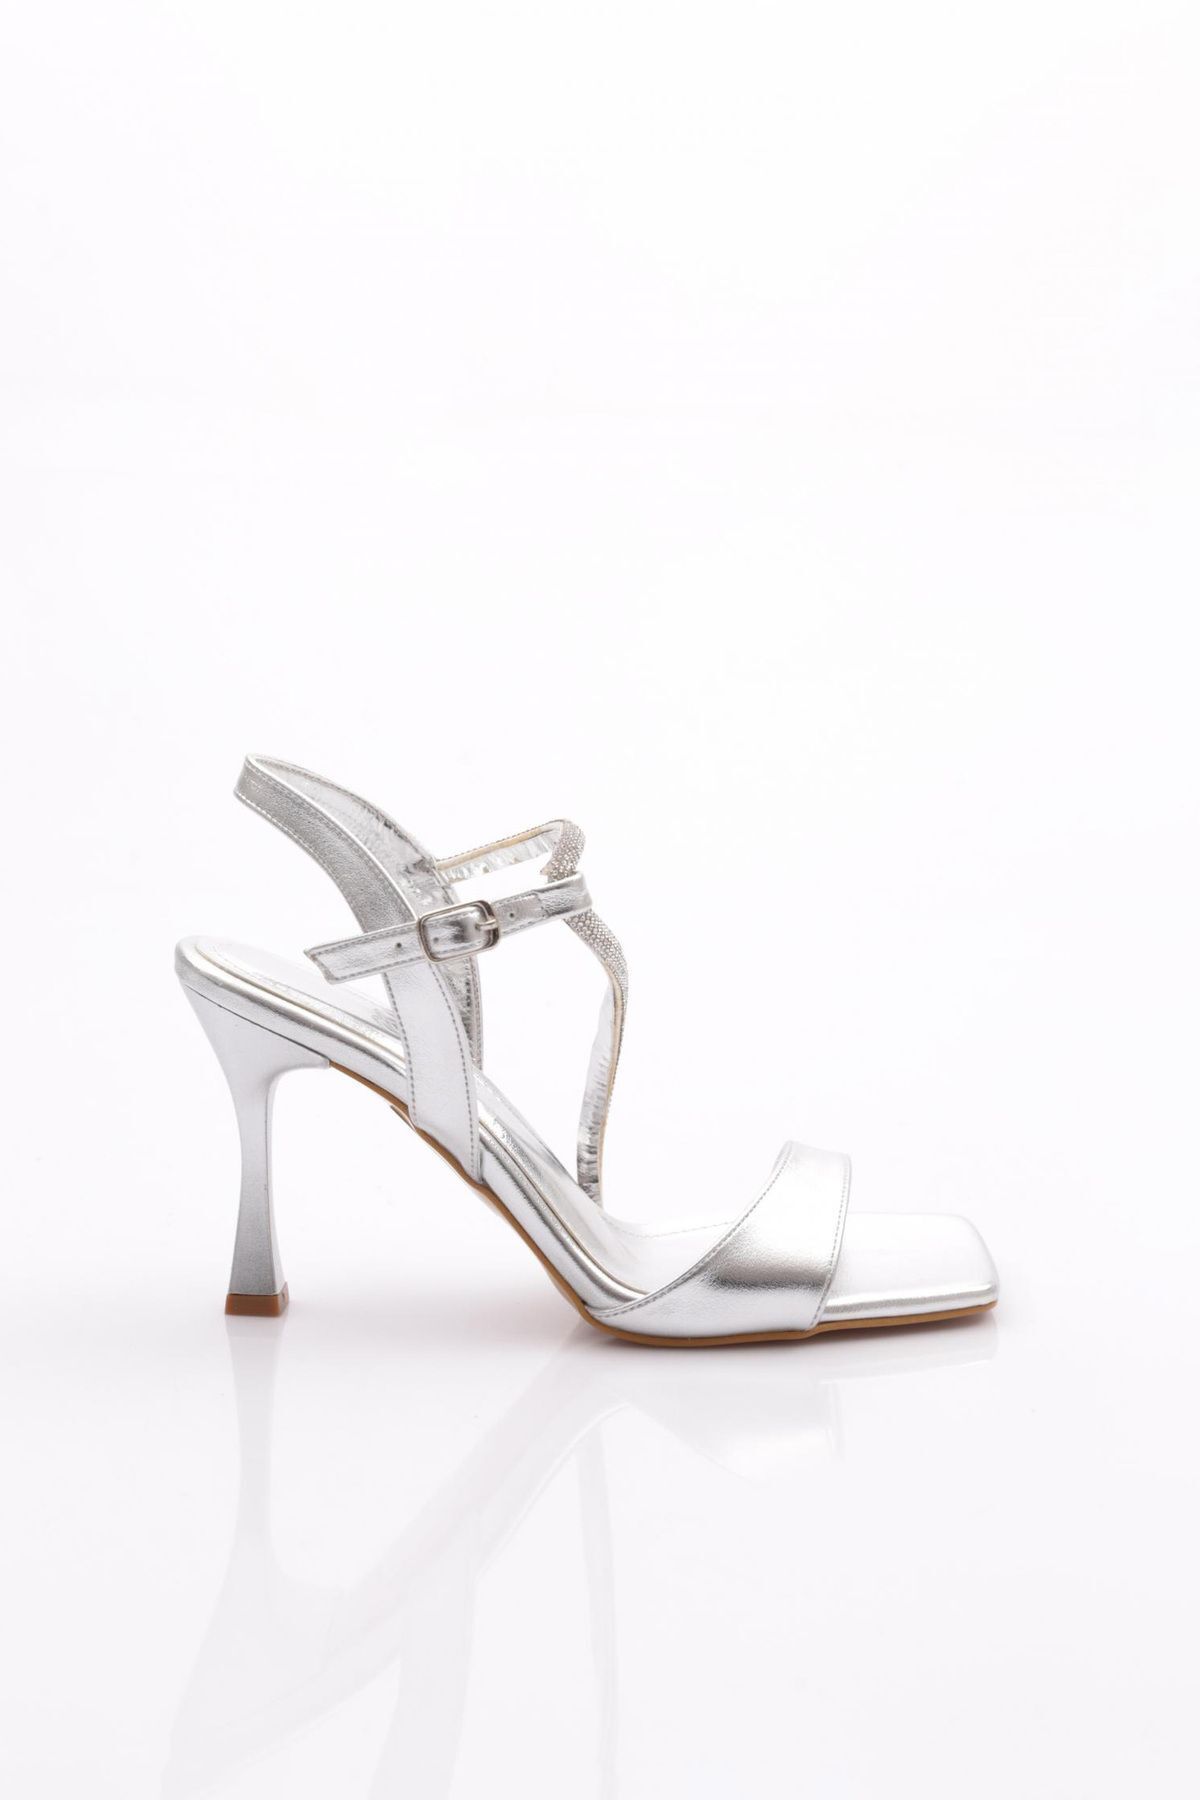 Dgn 4036 Kadın Taş Desenli Topuklu Ayakkabı Gümüş Metalik